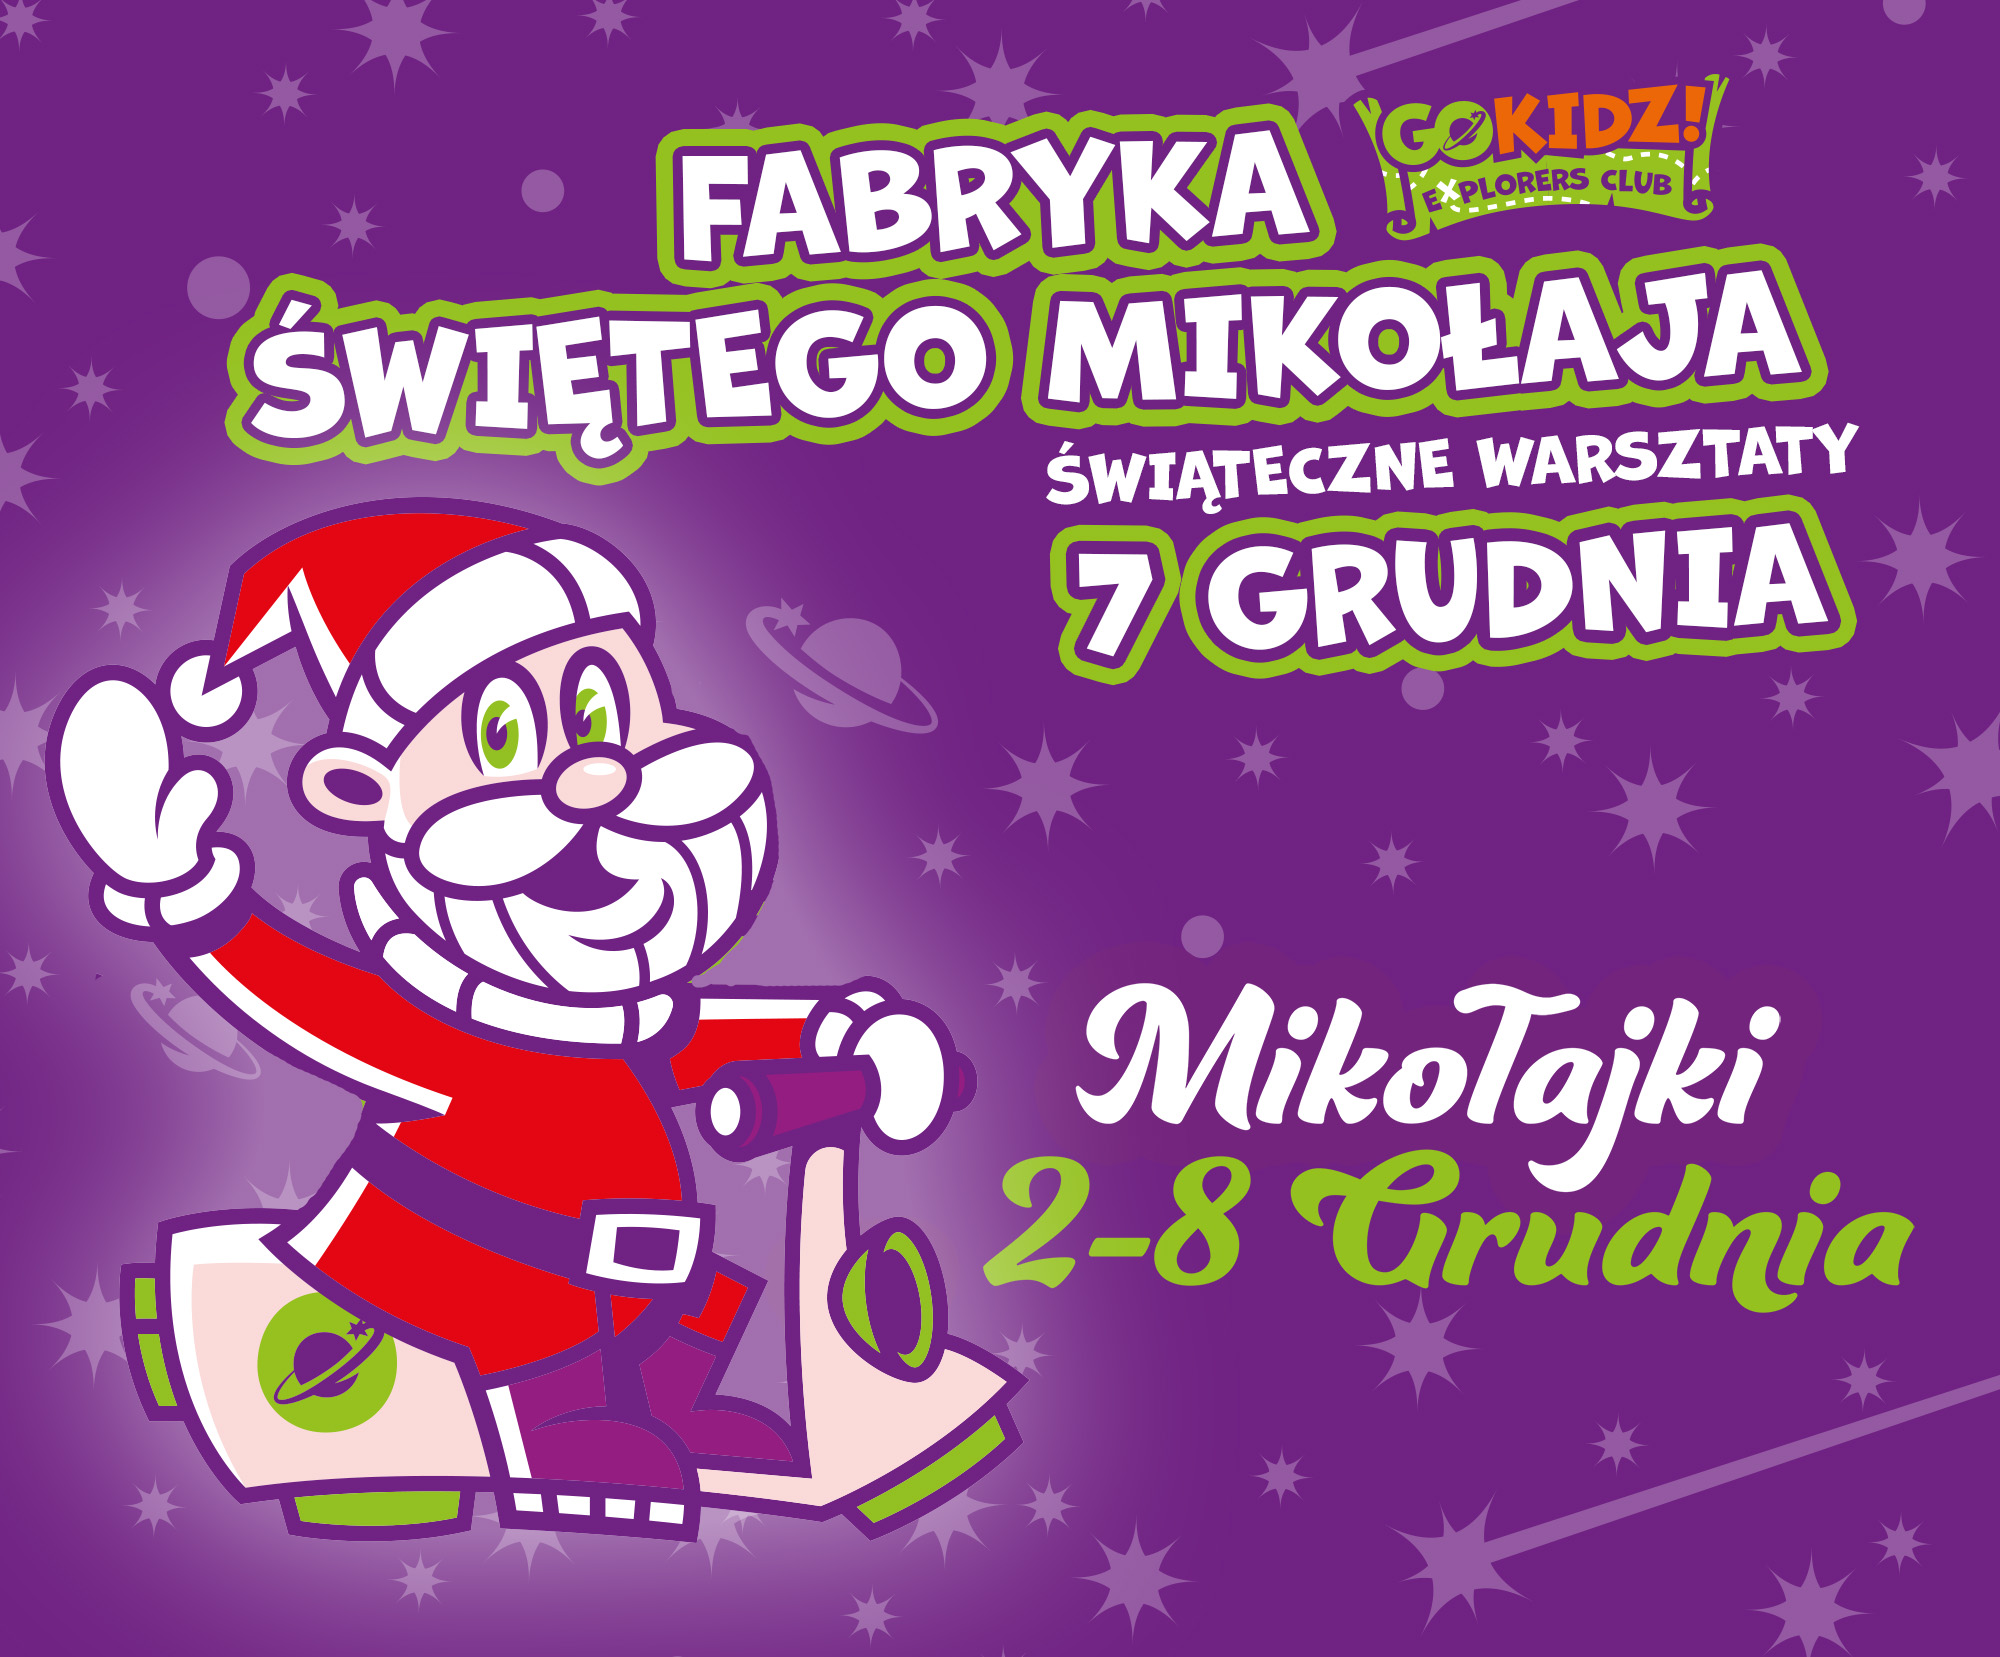 Fabryka Świętego Mikołaja- warsztaty świąteczne w GOkidz!